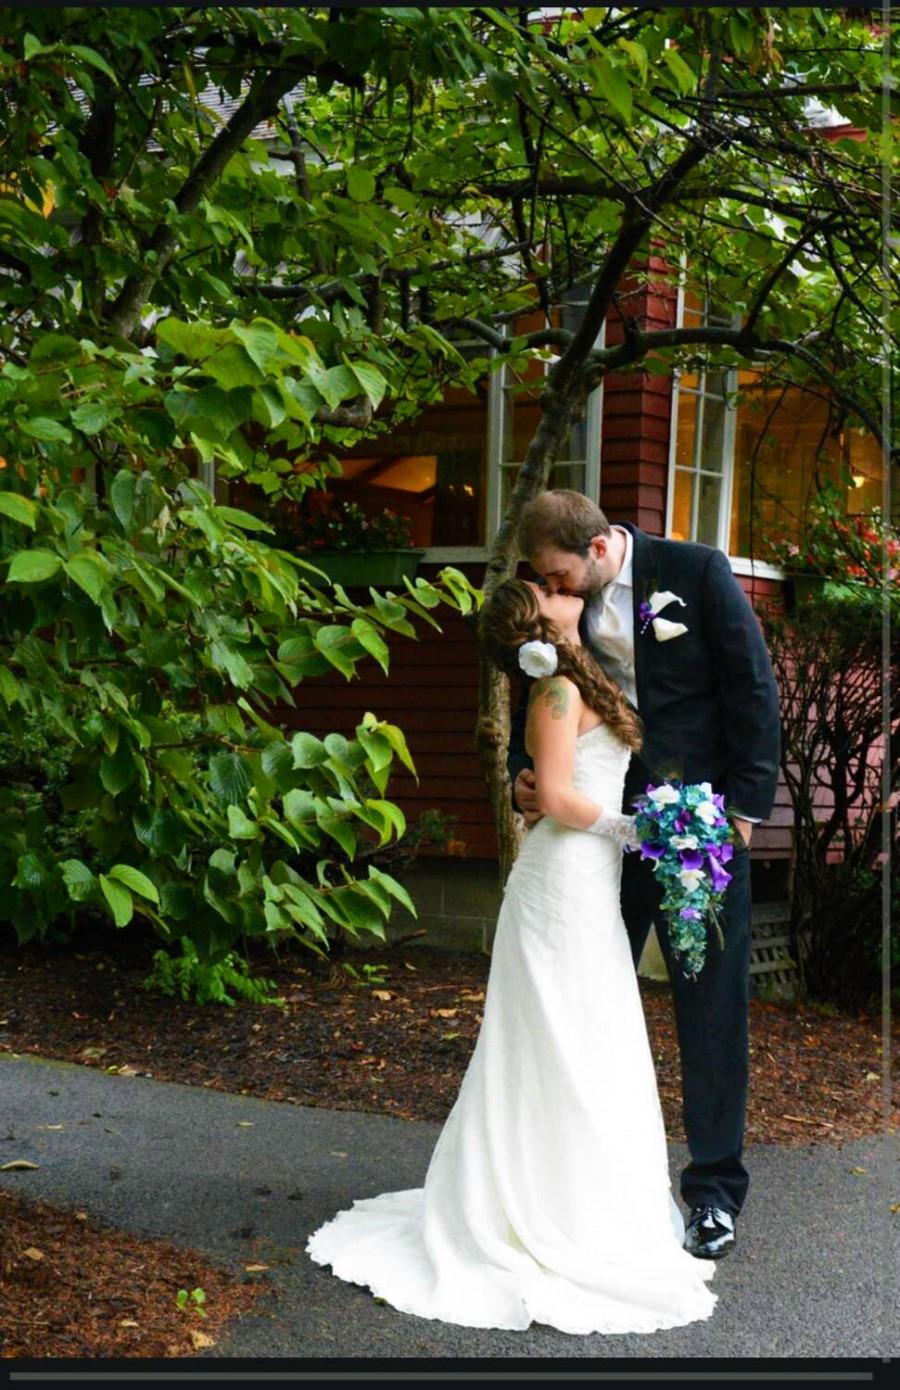 زفاف - Cascading bridal bouquet with teal hydrangeas, purple calla lilies and white orchids, peacock feather accent